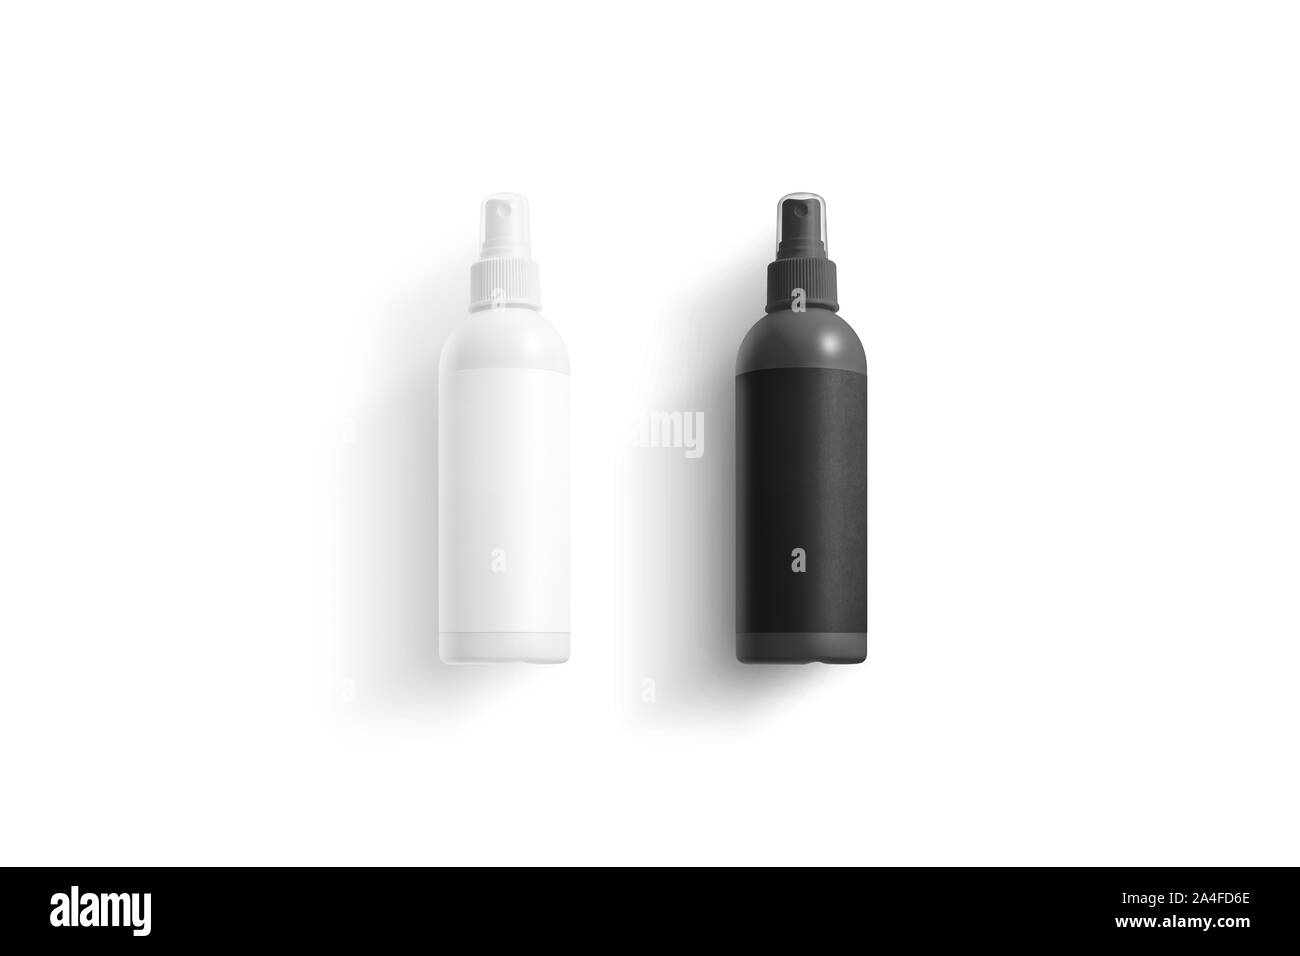 Bottiglia deodorante bianca e nera oscura, vista dall'alto Foto Stock